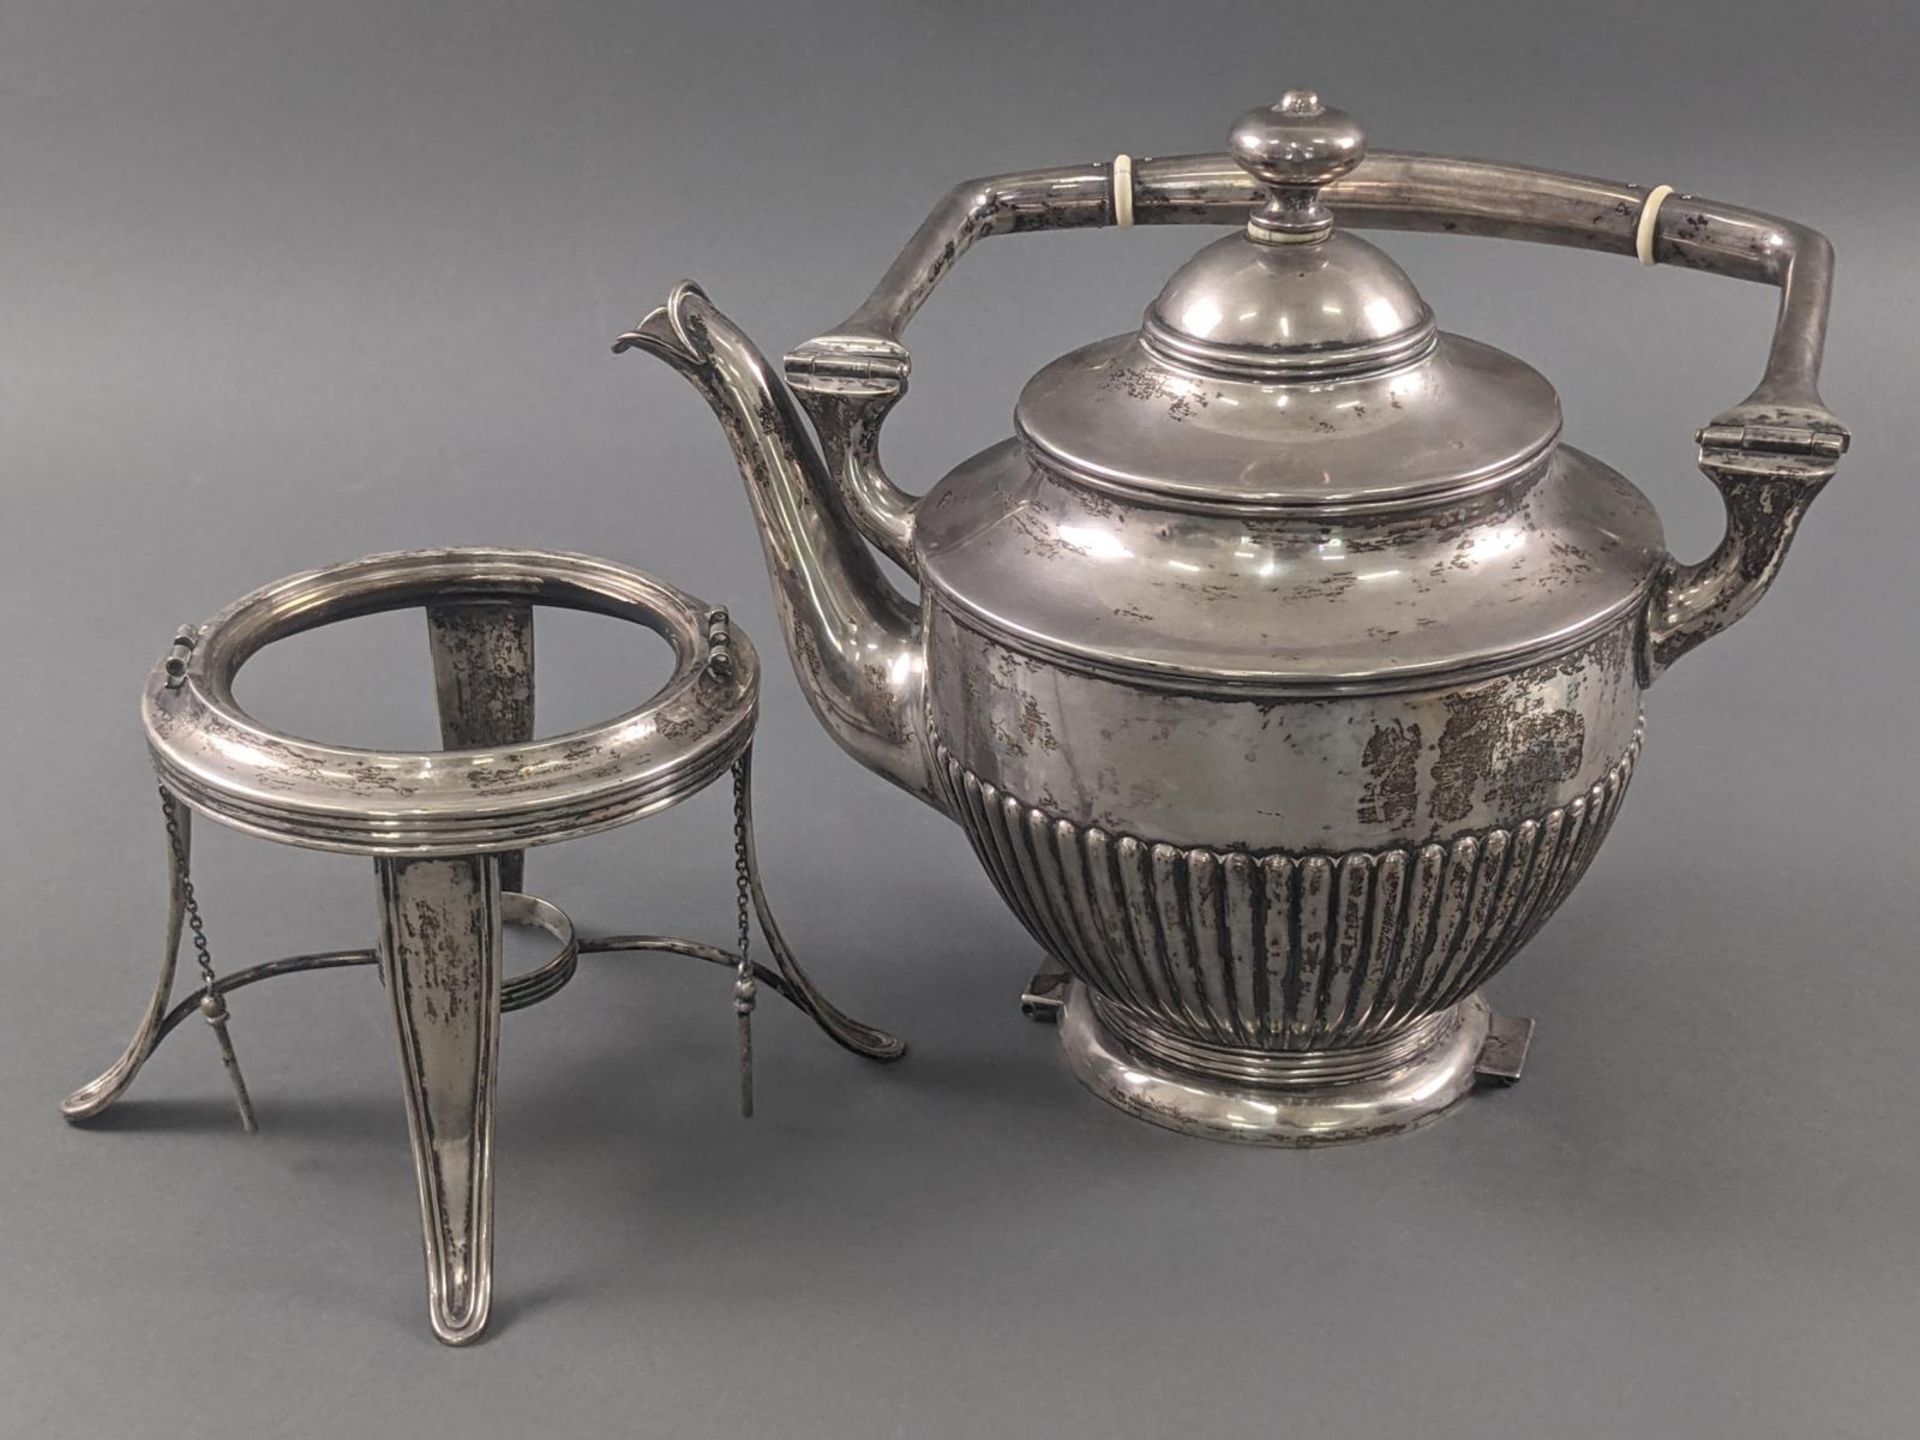 Teekessel auf Rechaud, England um 1900, Silber geprüft - Bild 5 aus 6